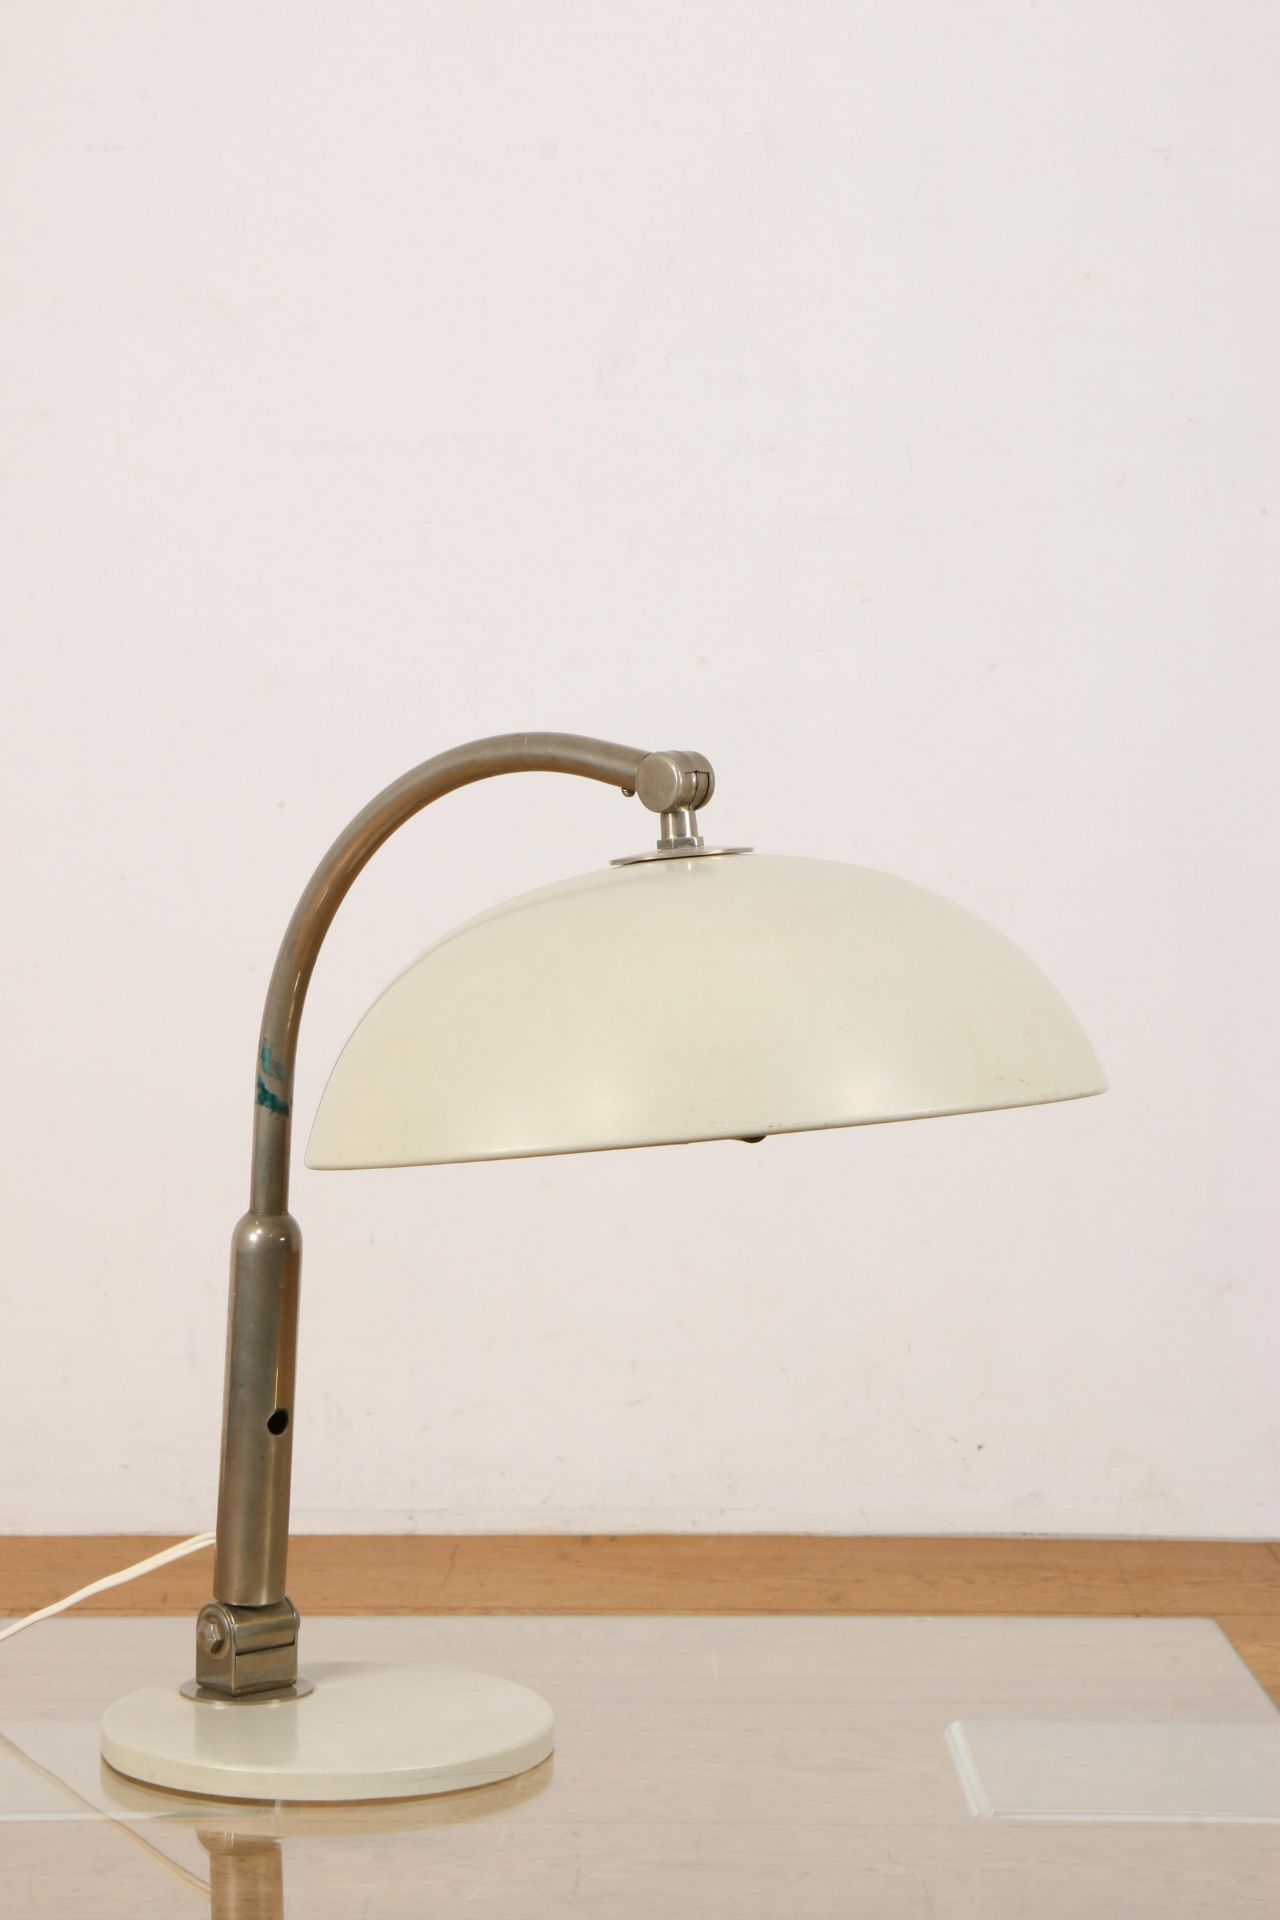 H. Busquet voor Hala, Zeist, stalen bureaulamp, model 144, ontwerp 1932, - Bild 2 aus 2